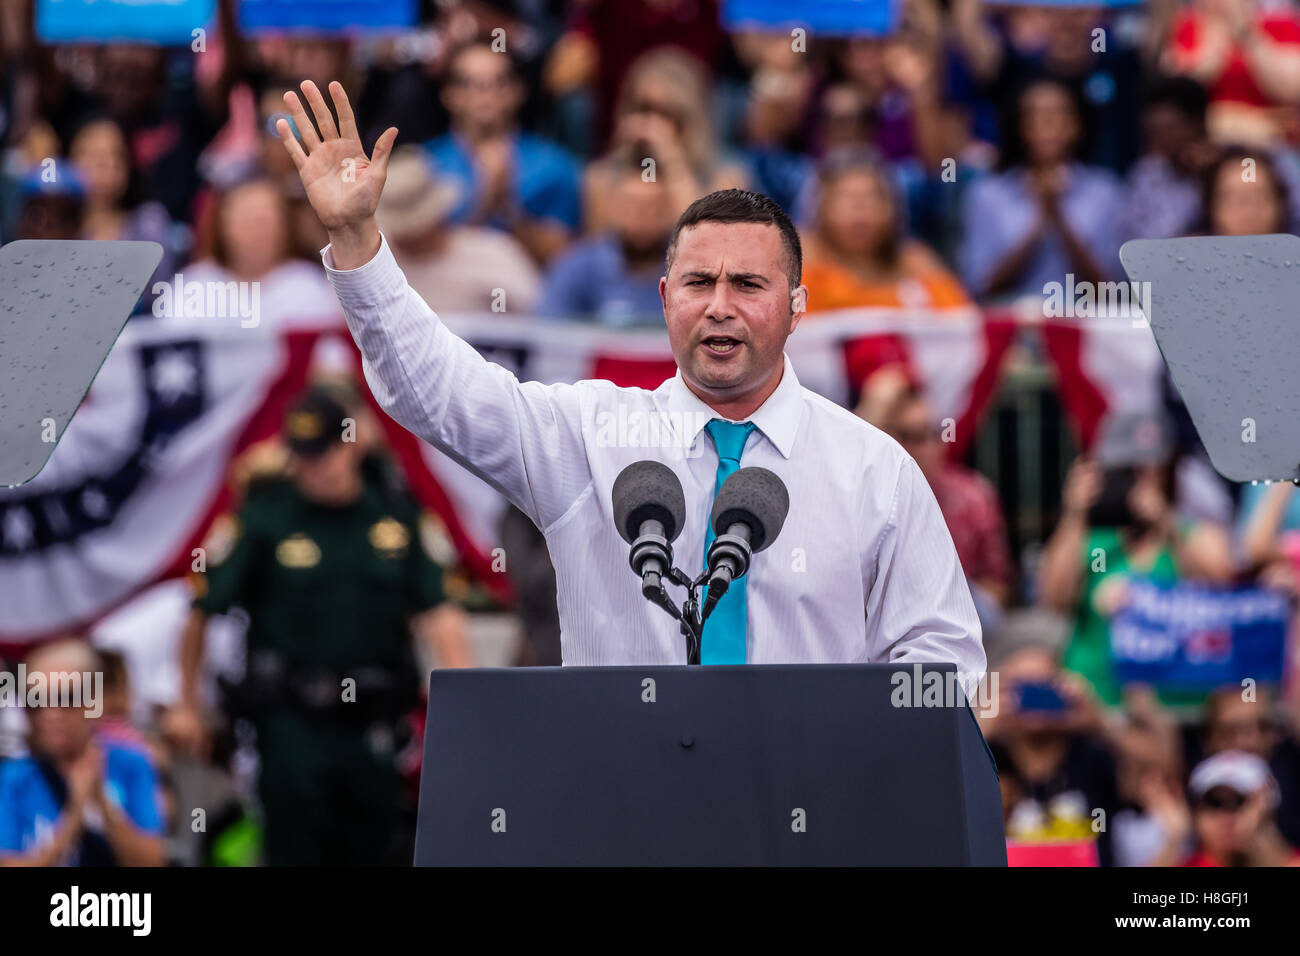 Florida Kongreßanwärter spricht Darren Soto an Präsident Barack Obama-Kampagne-Rallye für Hillary Clinton auf Sonntag, 6. November 2016 am Erbe-Park in Kissimmee, Florida. Stockfoto